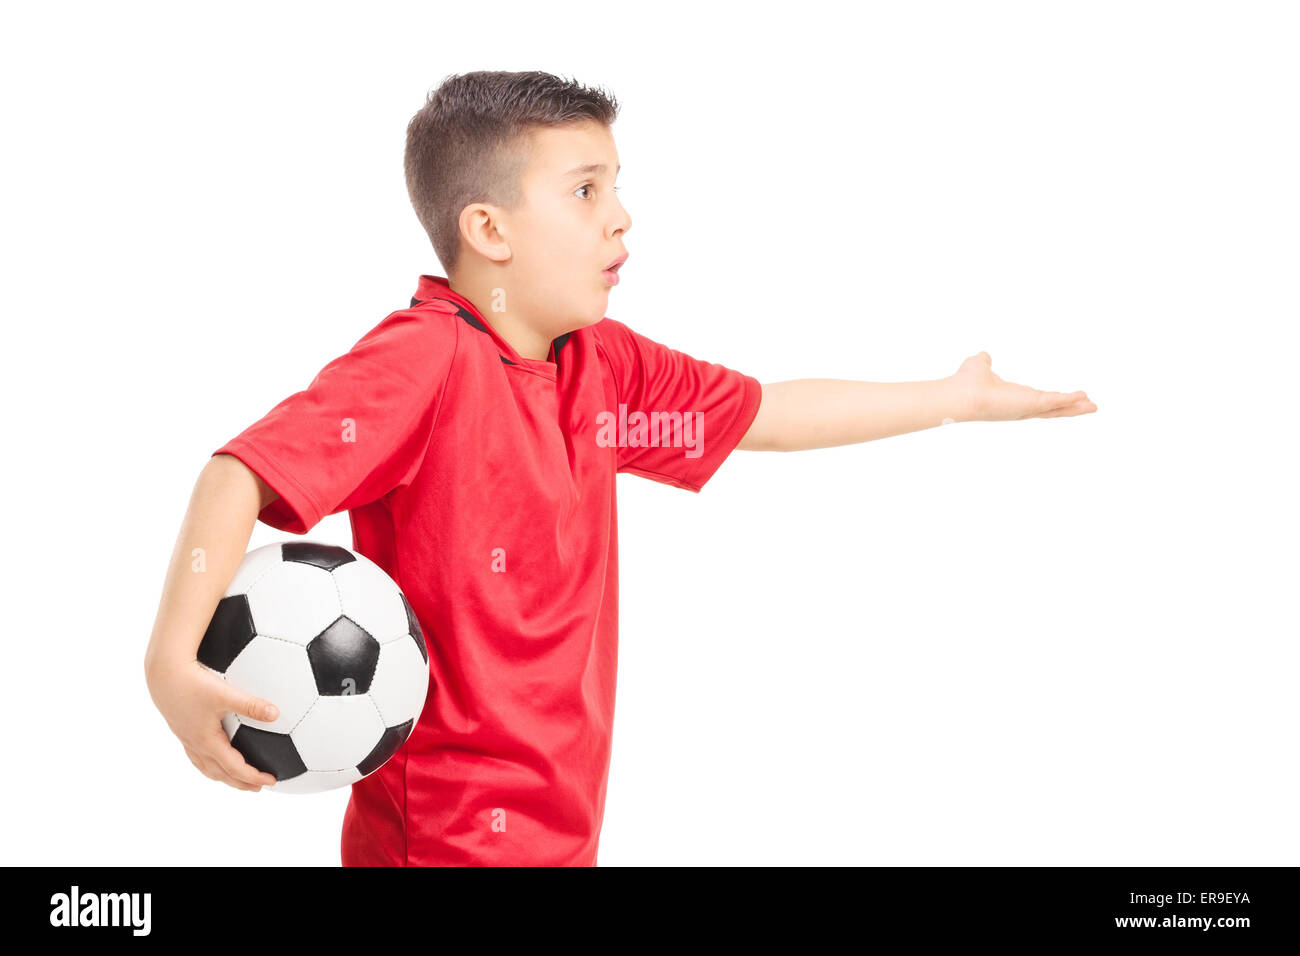 Un joueur de football junior gesturing mécontentement isolé sur fond blanc Banque D'Images